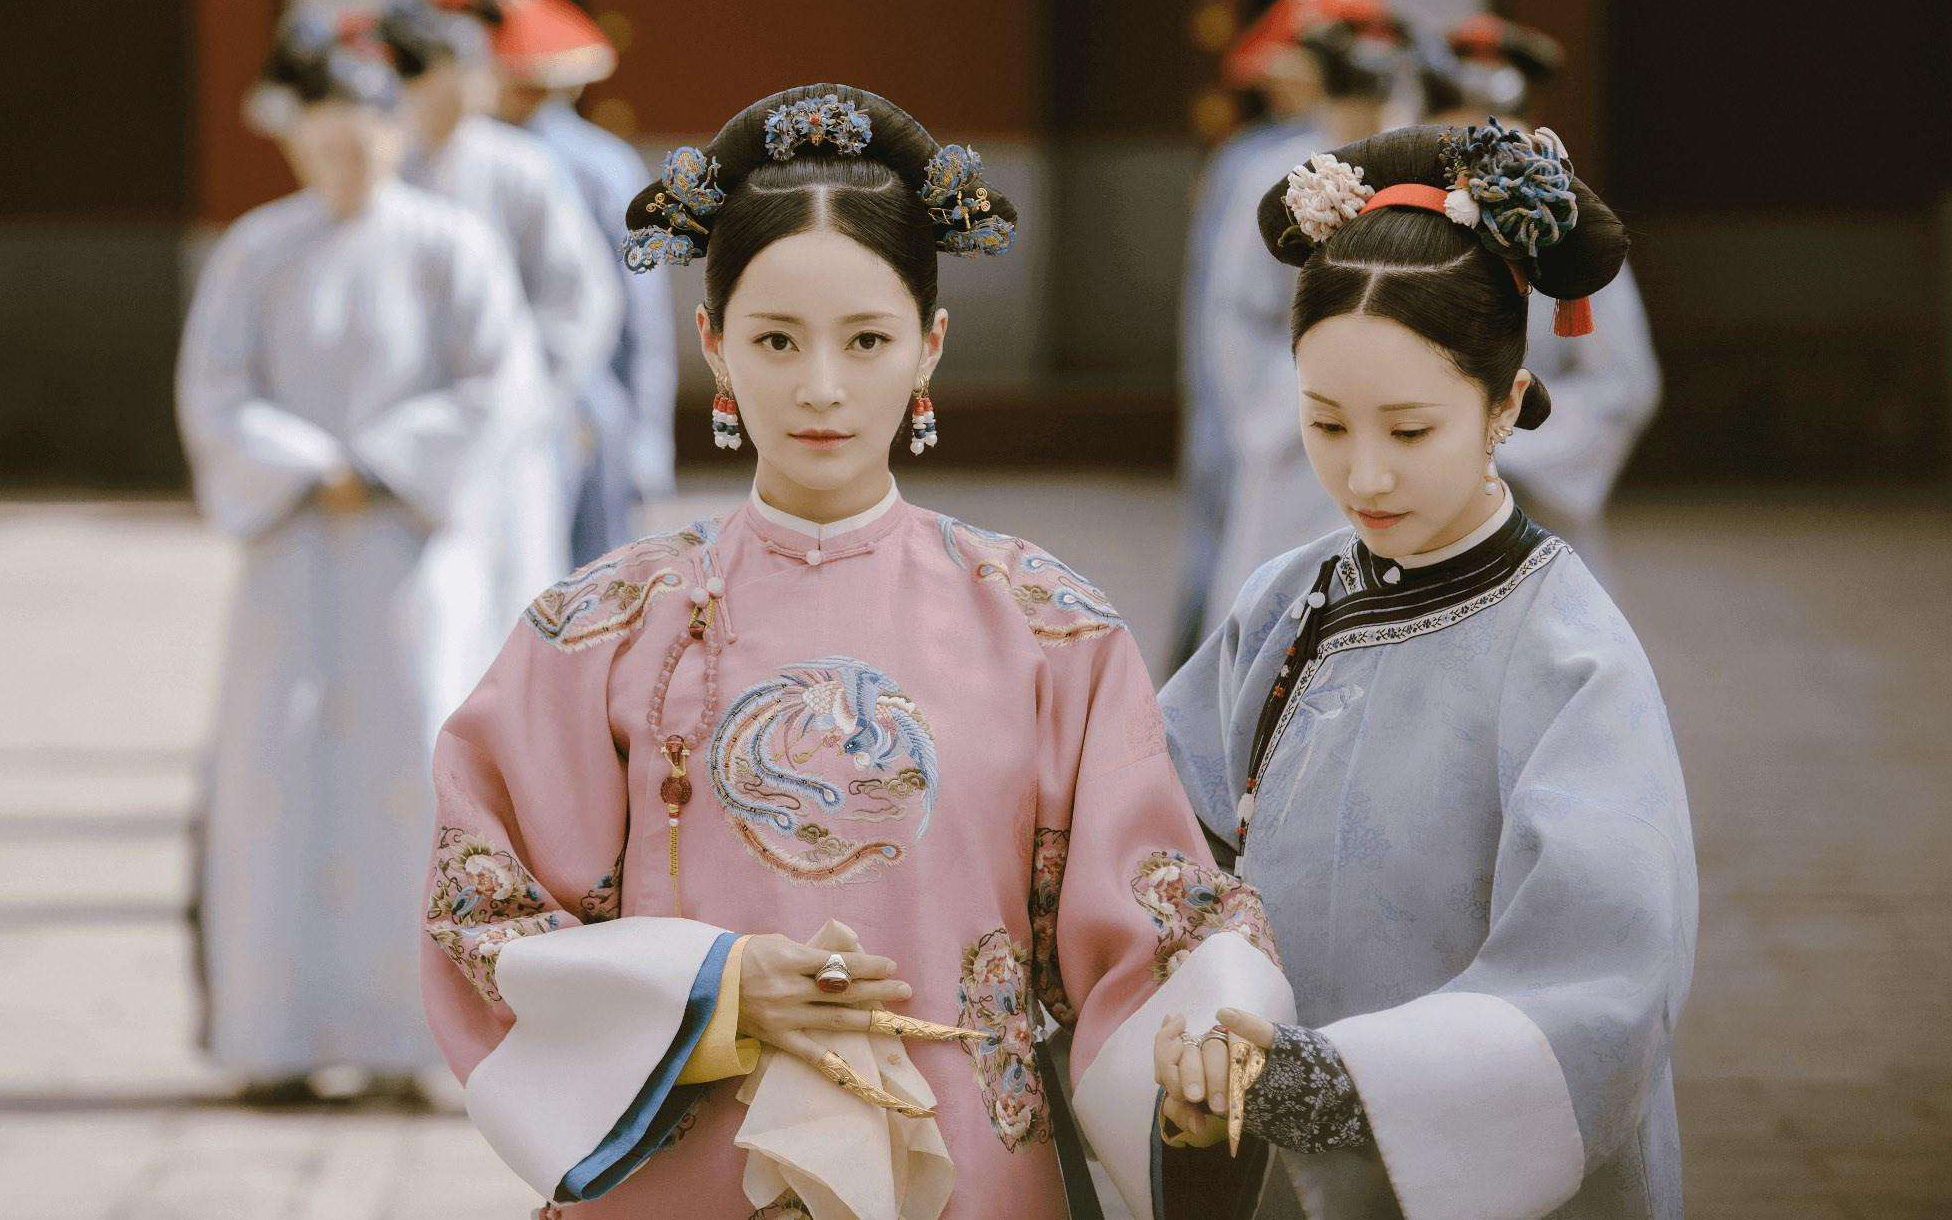 Cung nữ khiến Từ Hi Thái hậu phải hành lễ: Xuất thân thấp kém nhưng từng là nữ nhân duy nhất trong hậu cung được Hoàng đế sủng hạnh